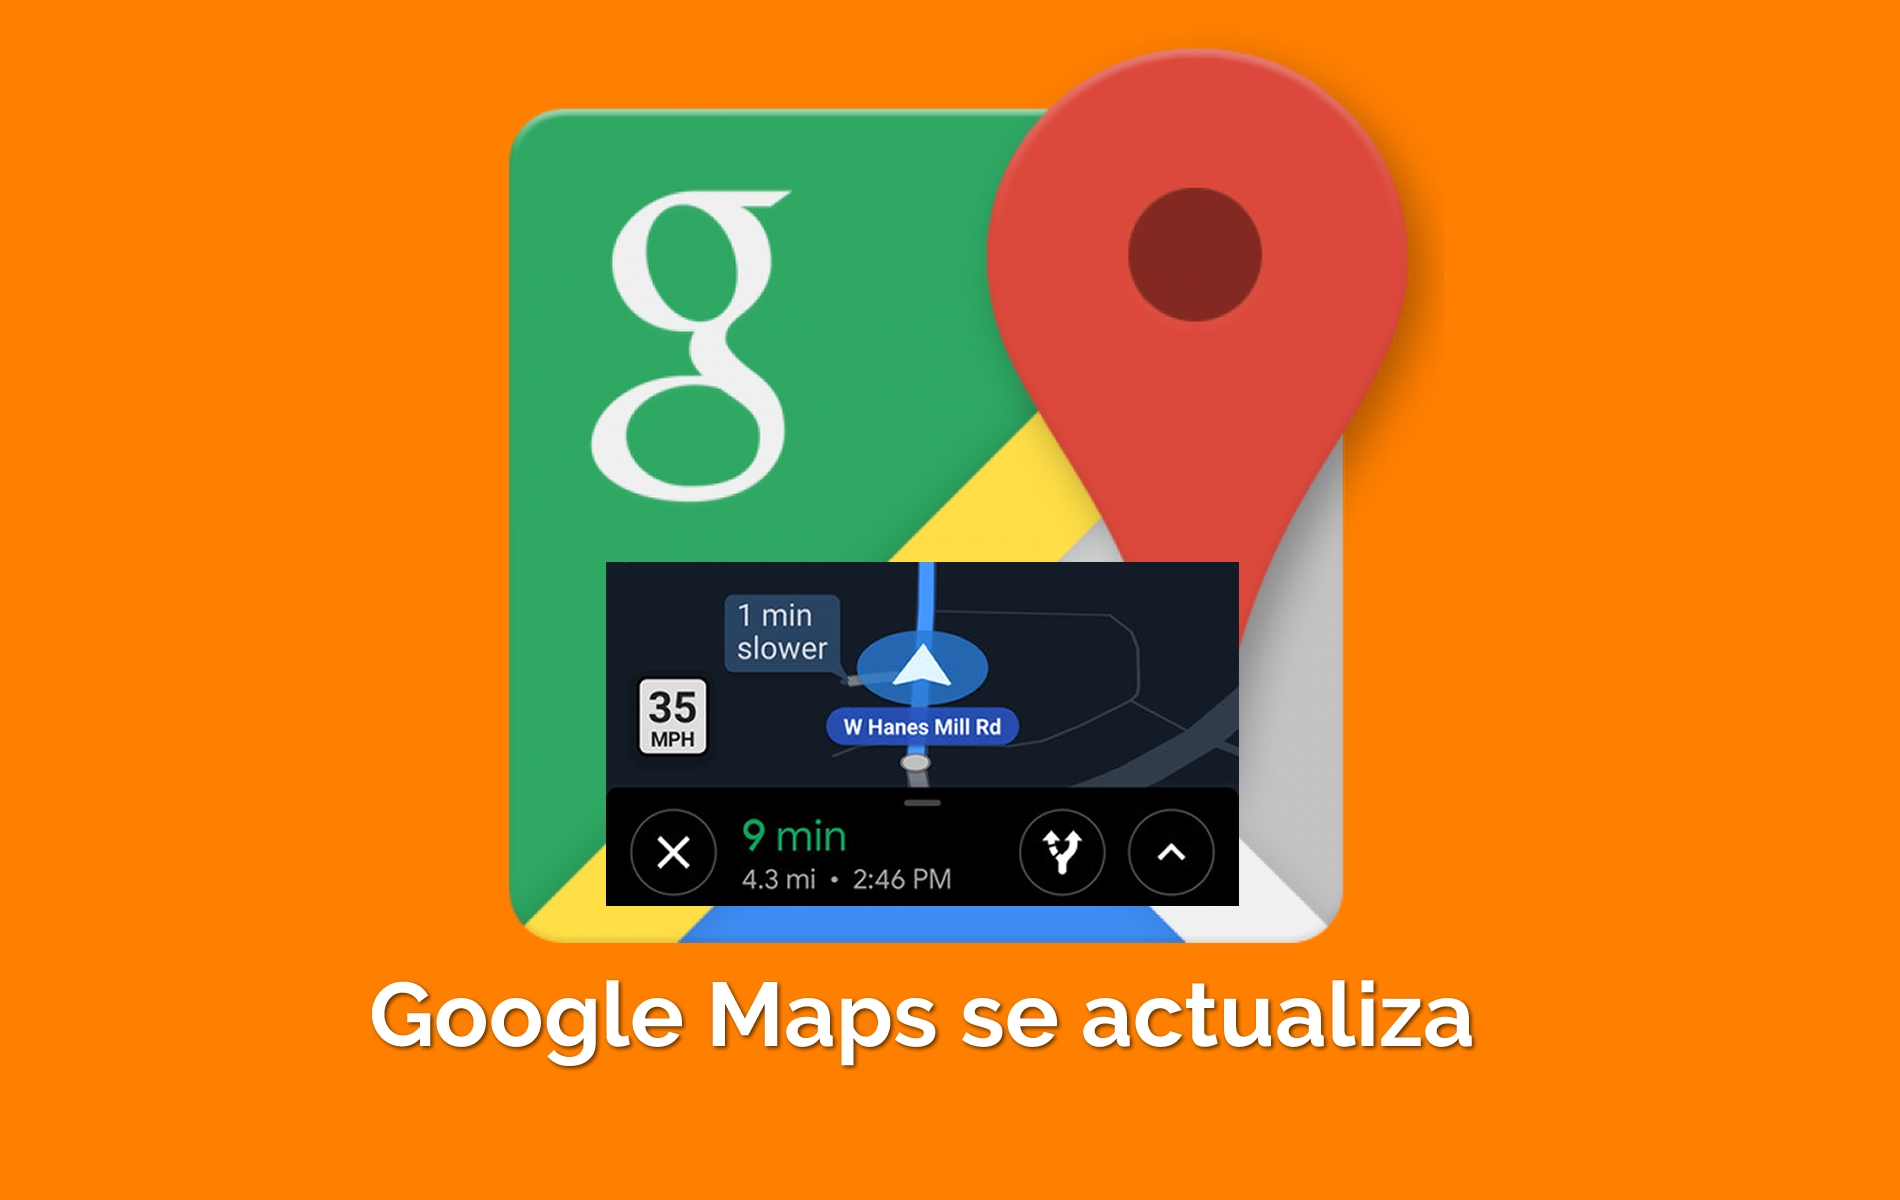 Google Maps se actualiza anunciando el límite de velocidad y la ubicación de radares en carretera